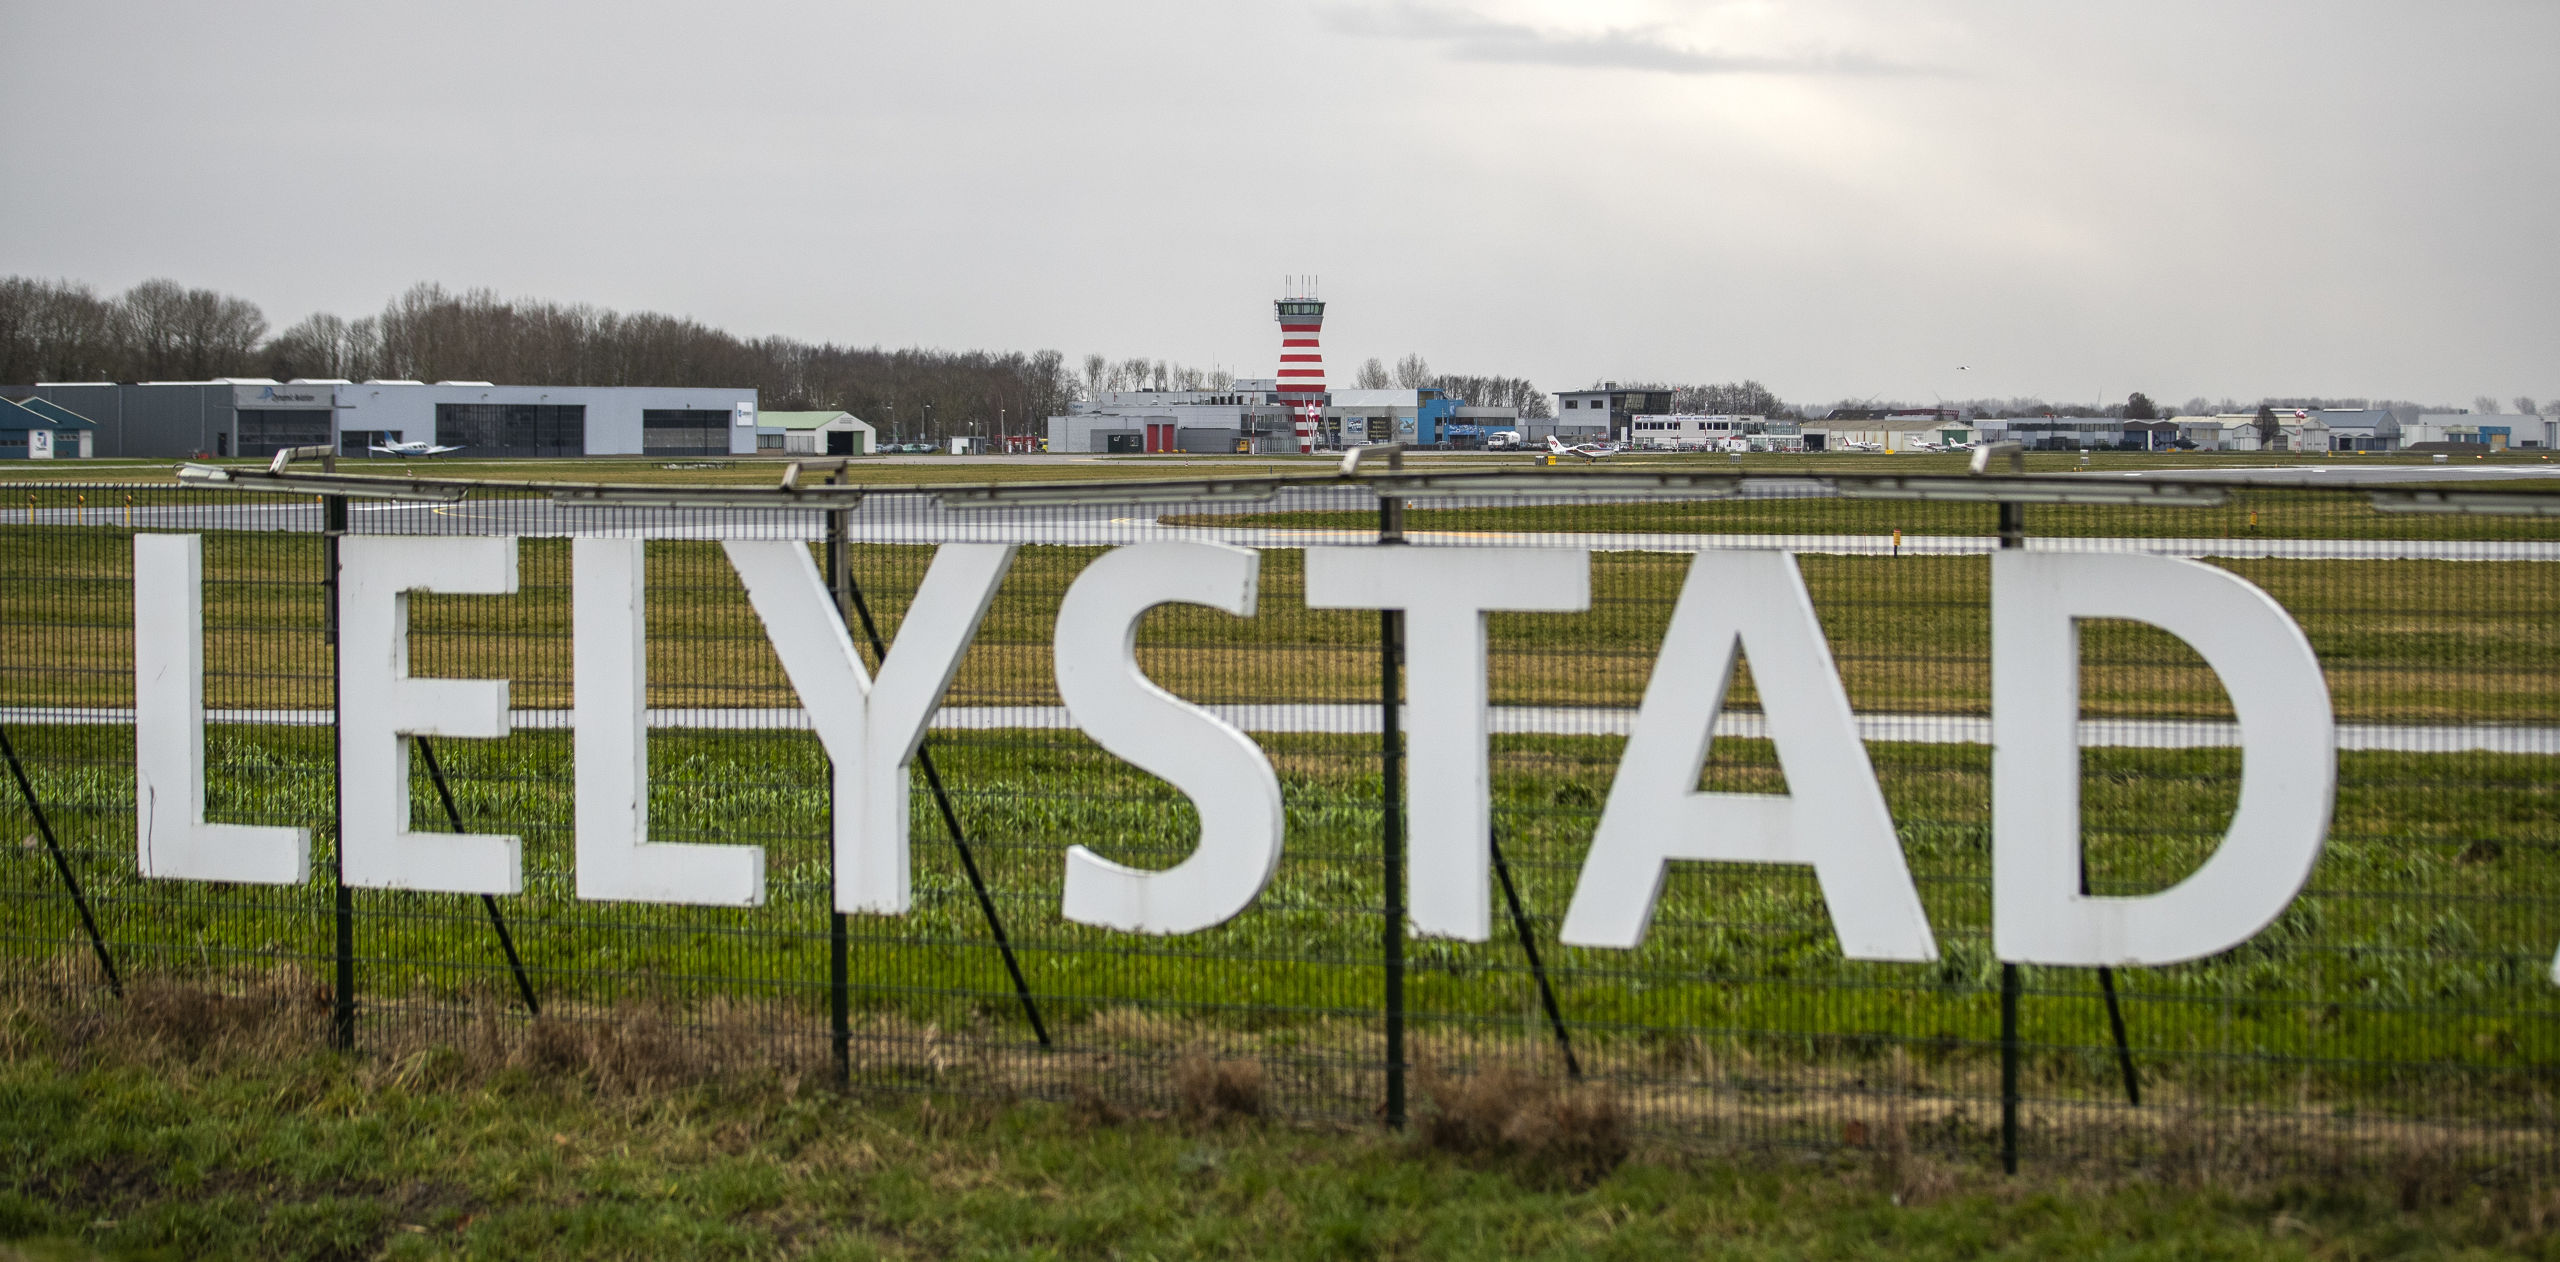 Exterieur van Lelystad Airport